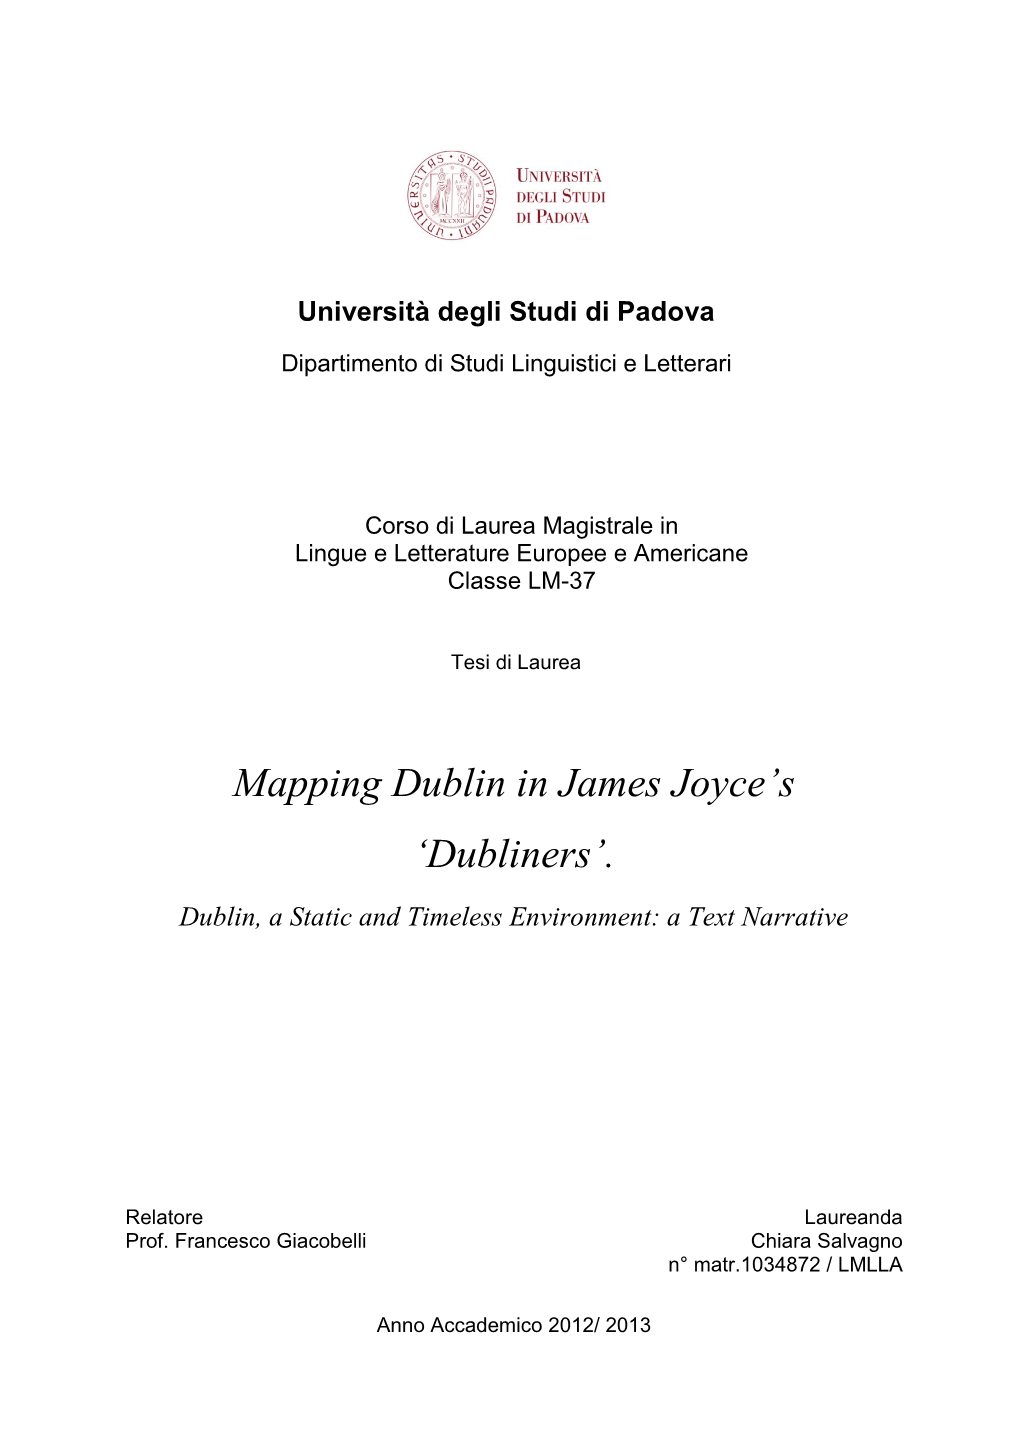 Mapping Dublin in James Joyce's